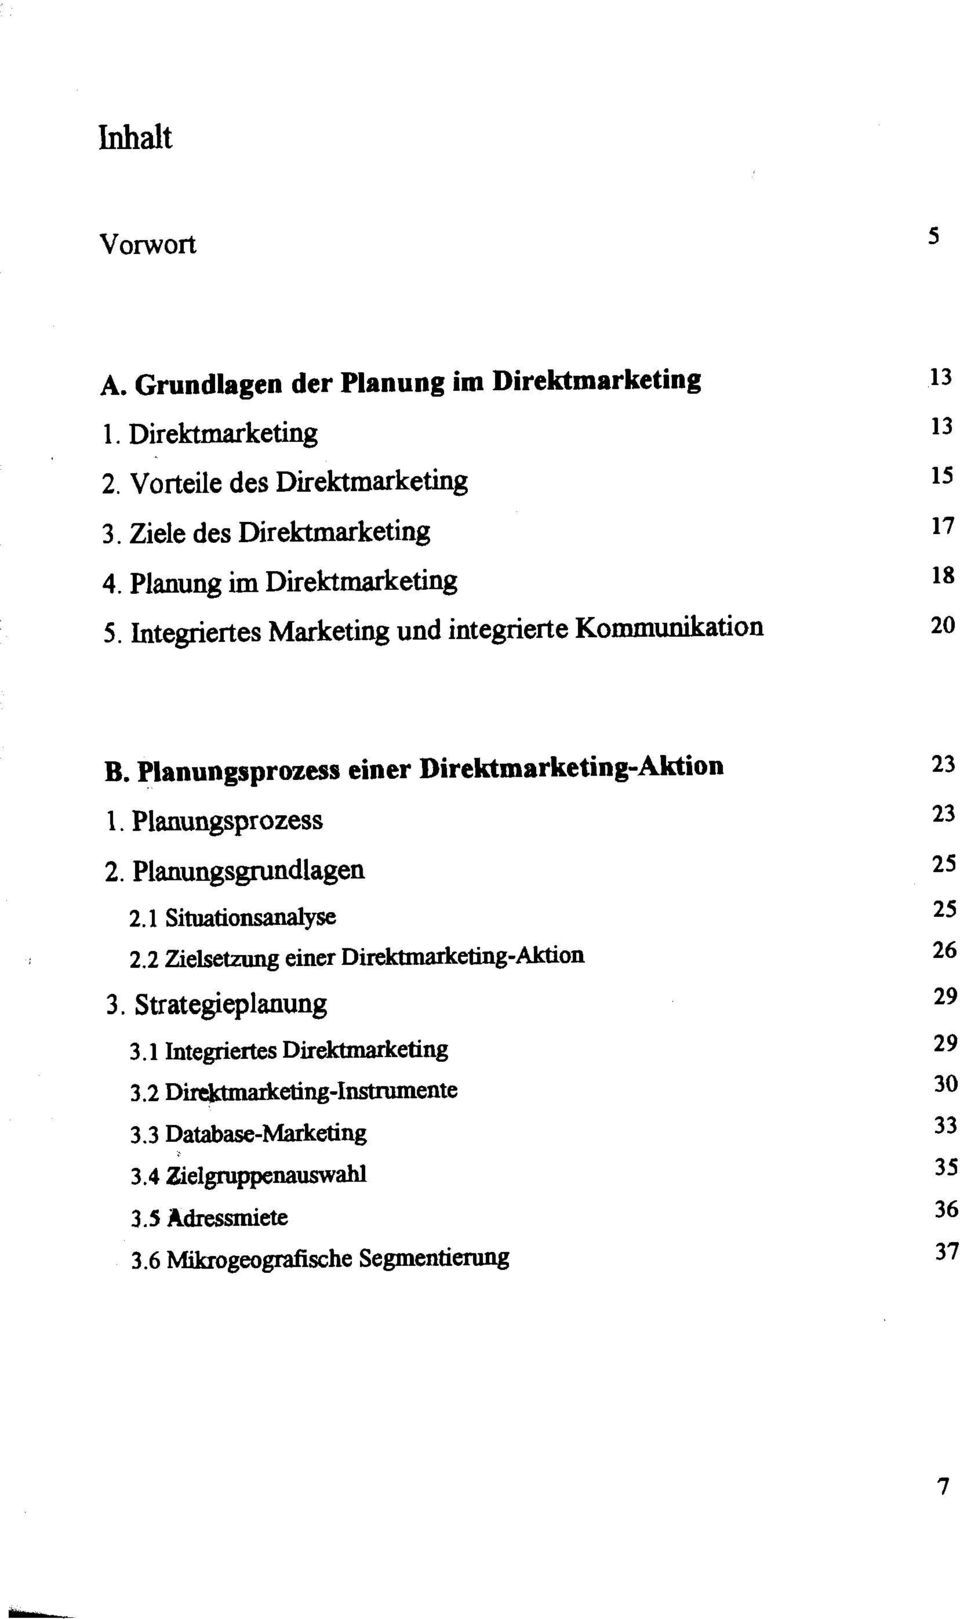 Planungsprozess einer Direktmarketing-Aktion 1. Planungsprozess 2. Planungsgmndlagen 2.1 Situationsanalyse 2.